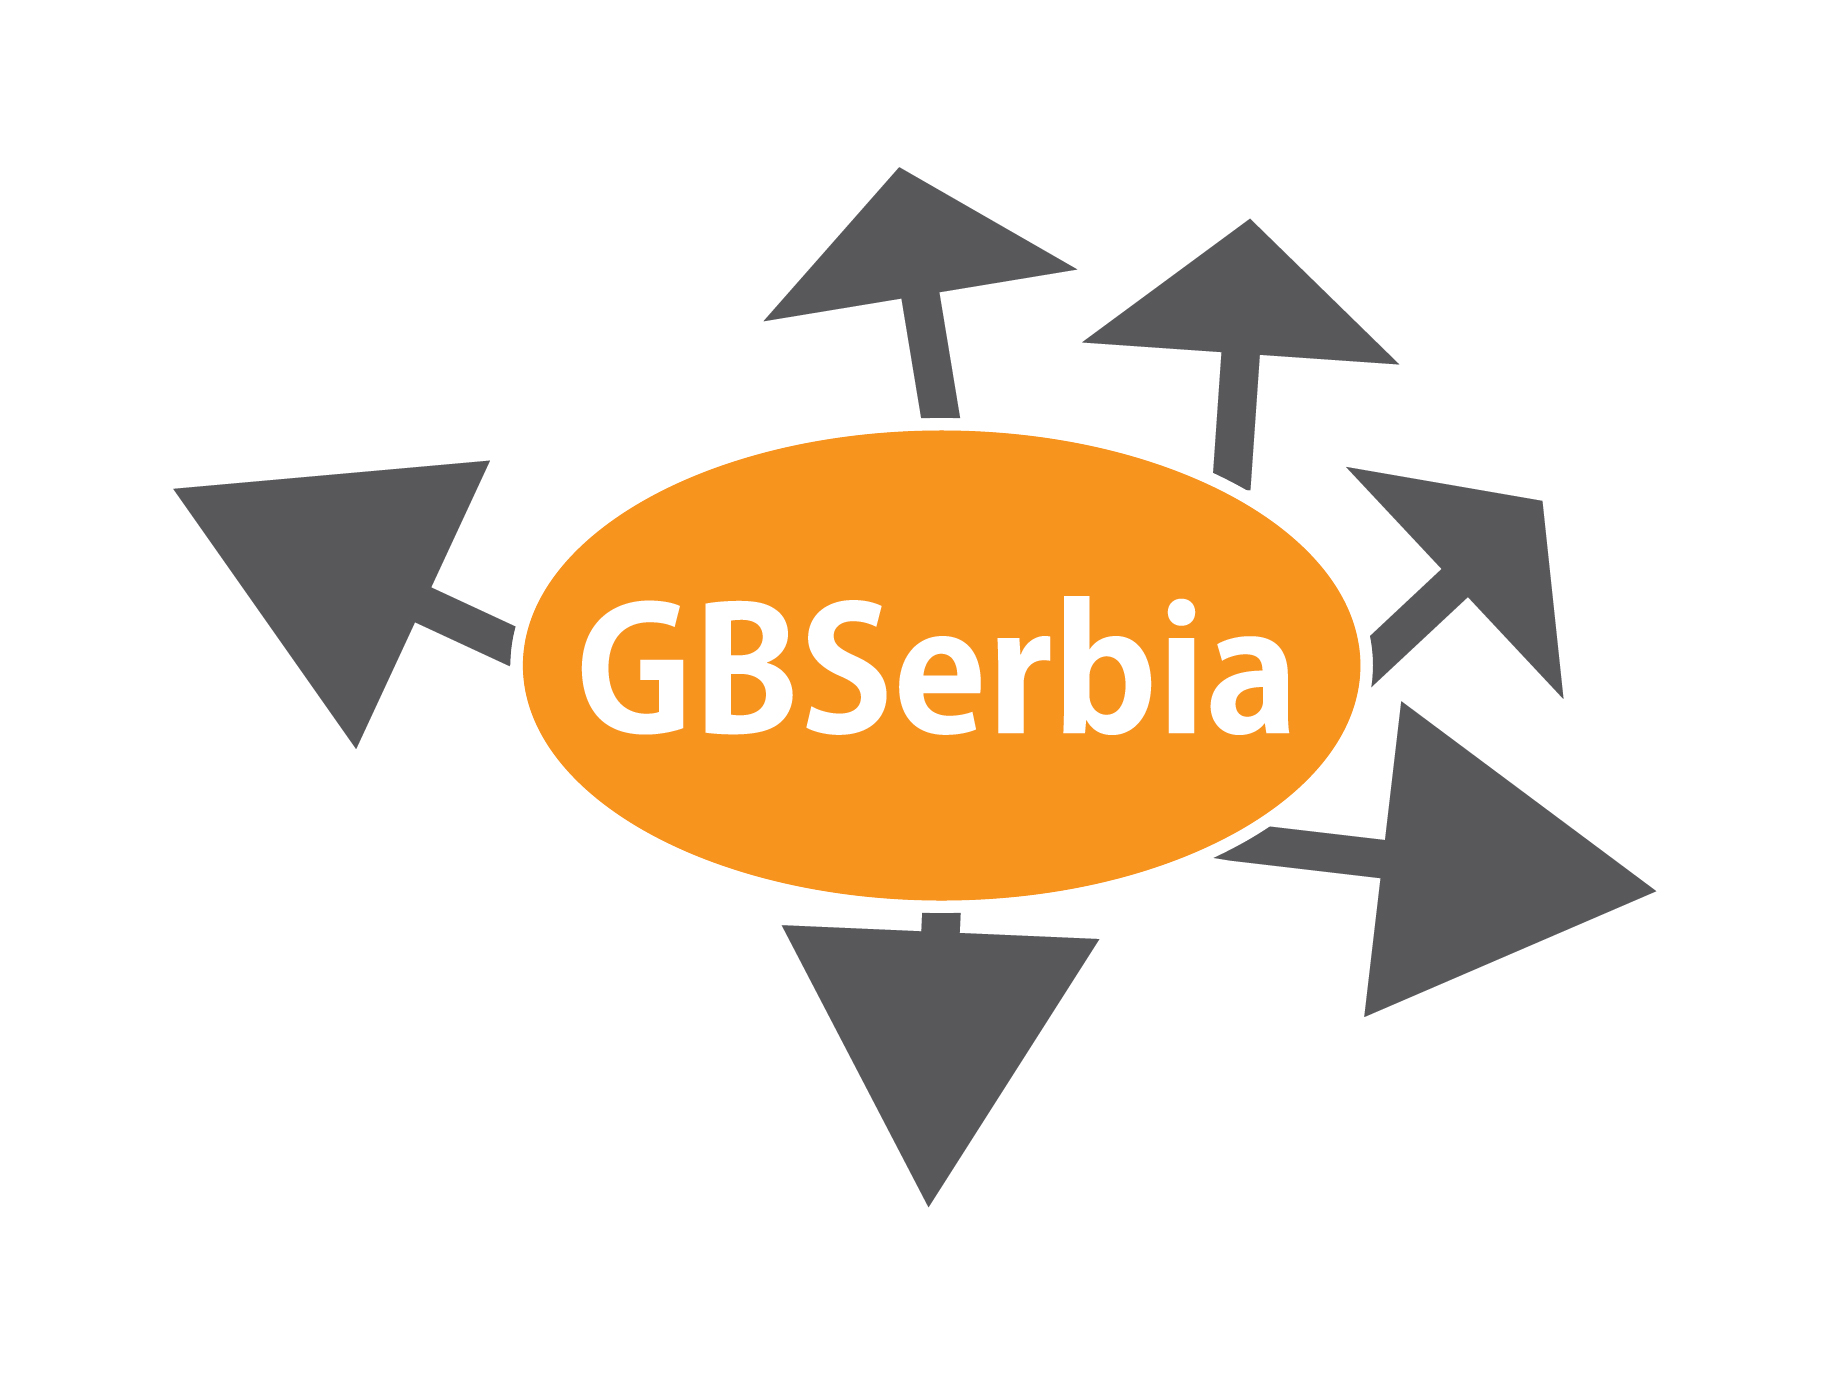 GBSerbia